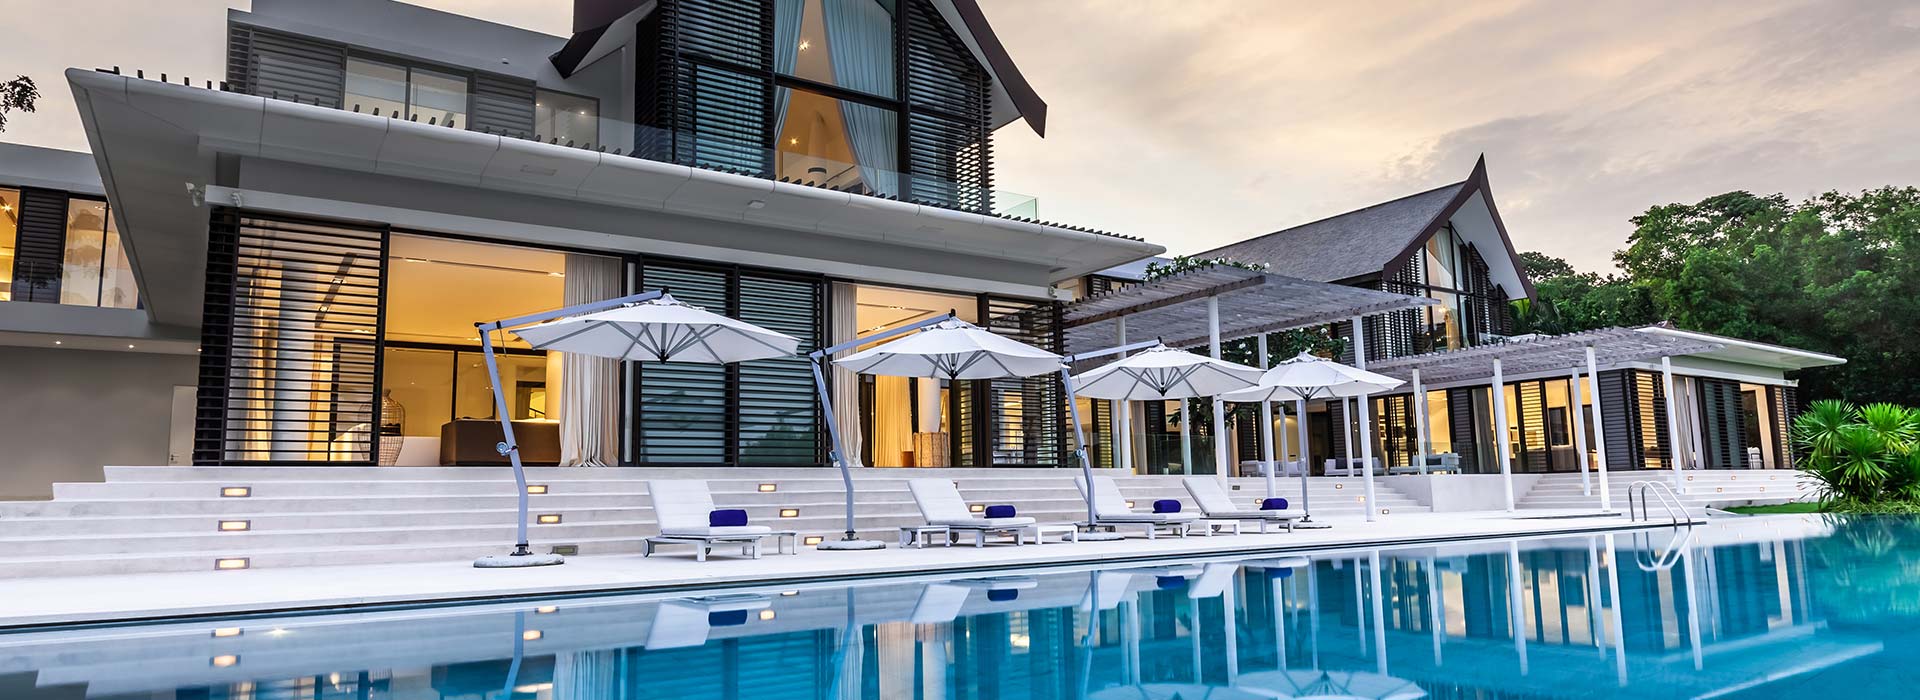 Villa Verai 6 Bedrooms<br>with private pool